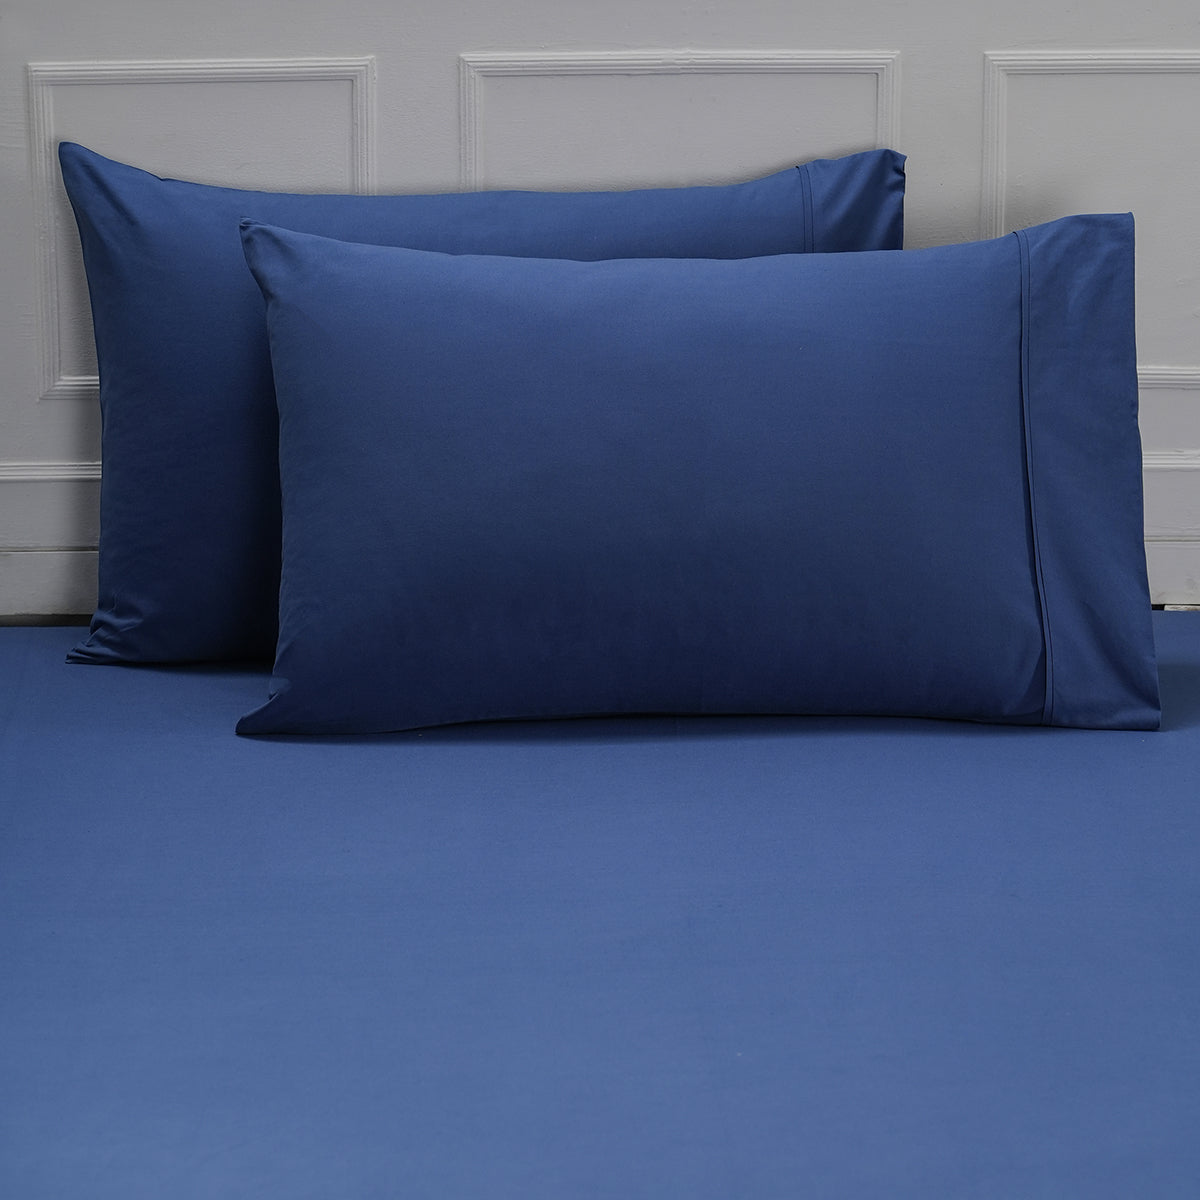 Eden Crisp & Light Weight 100% Cotton Solid Blue Fitted Sheet